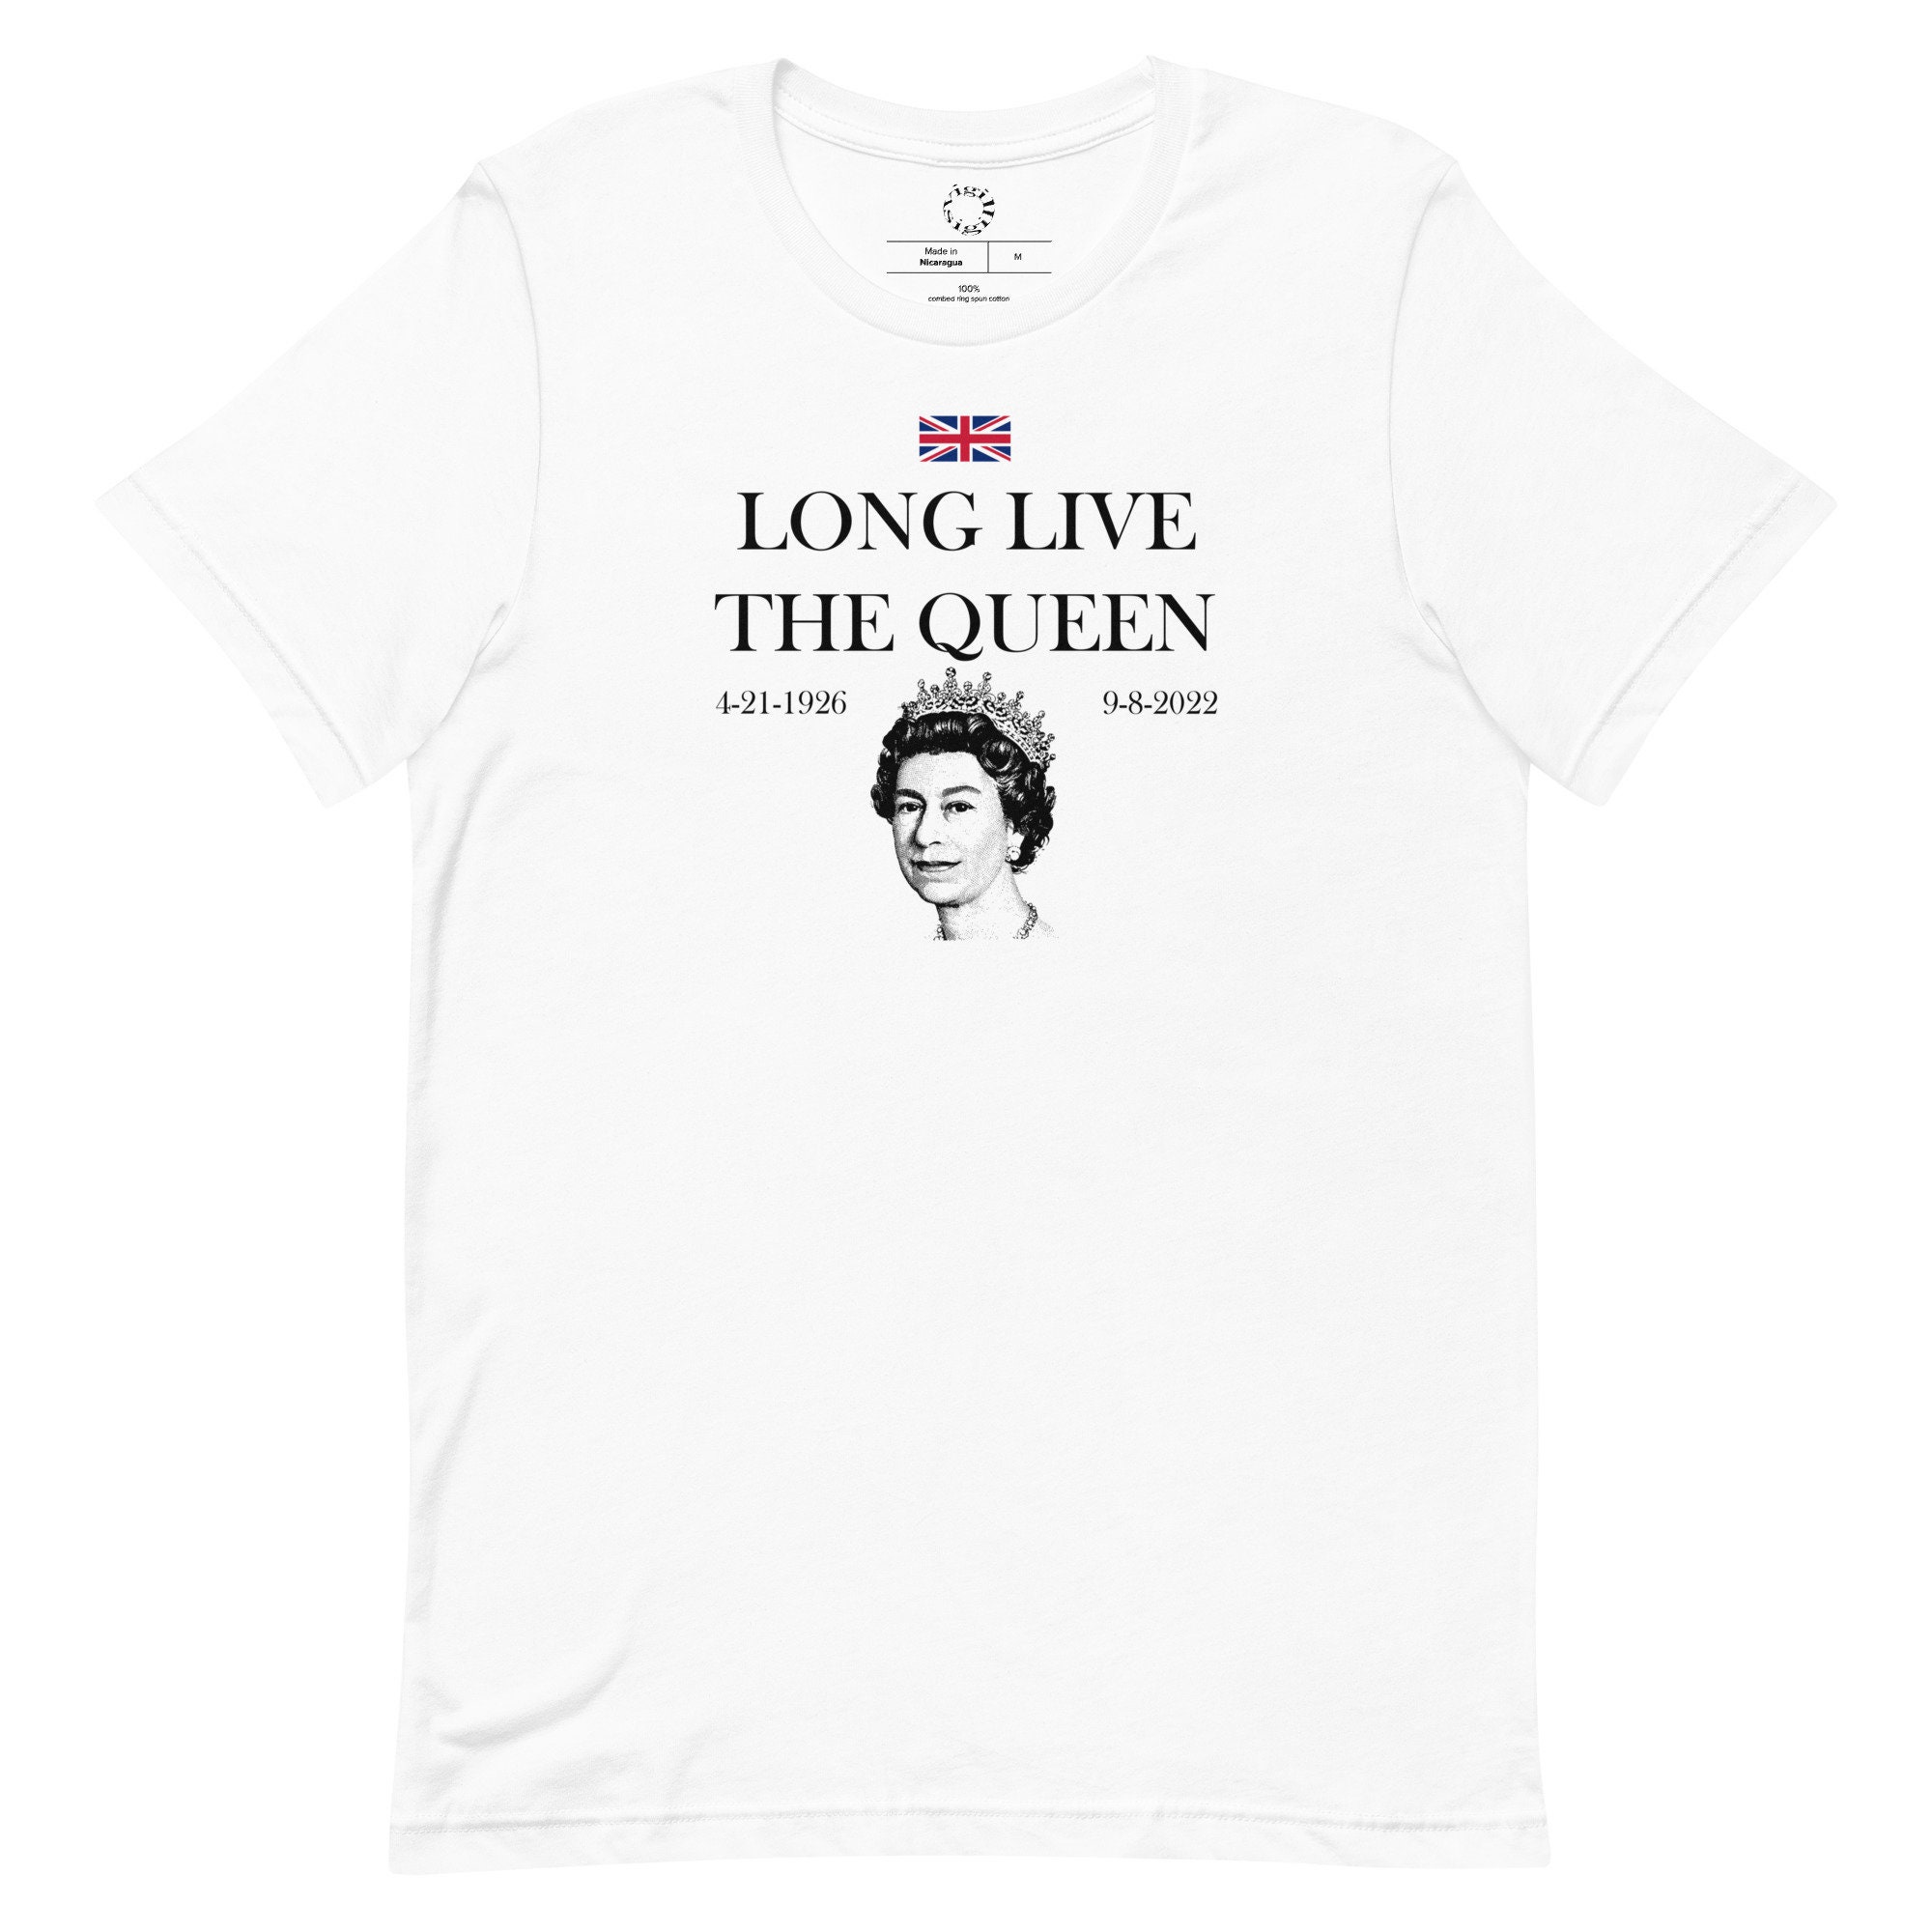 Discover LONG LIVE The Queen - Queen Elizabeth II T-Shirt